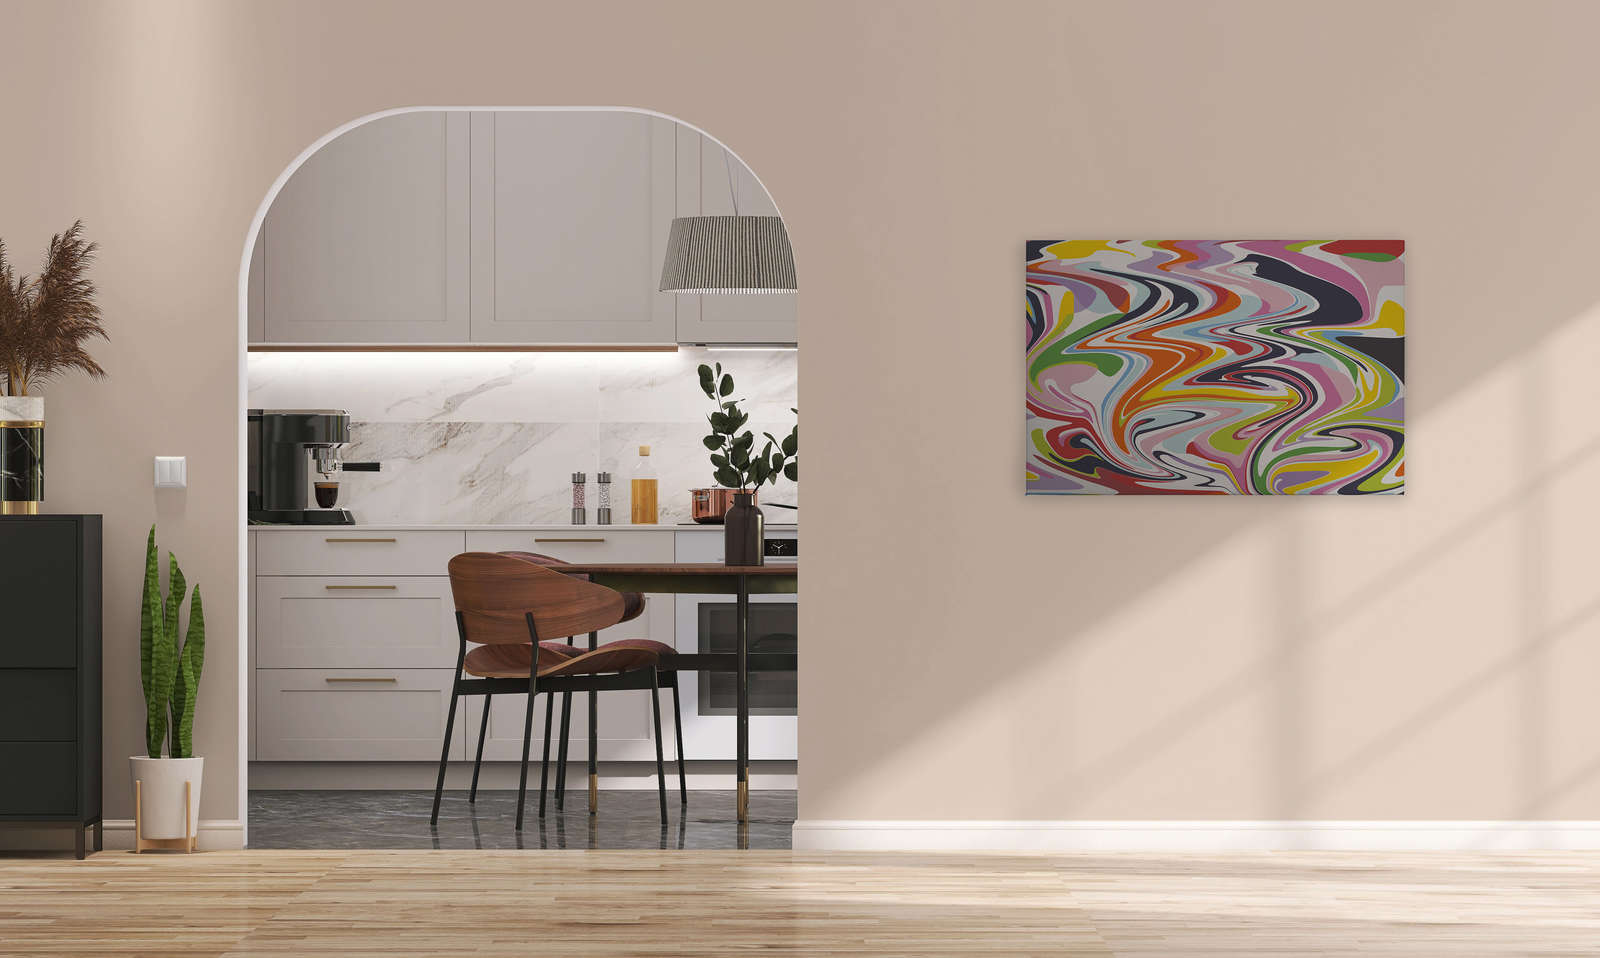             Tableau toile abstrait mélange de couleurs multicolores - 0,90 m x 0,60 m
        